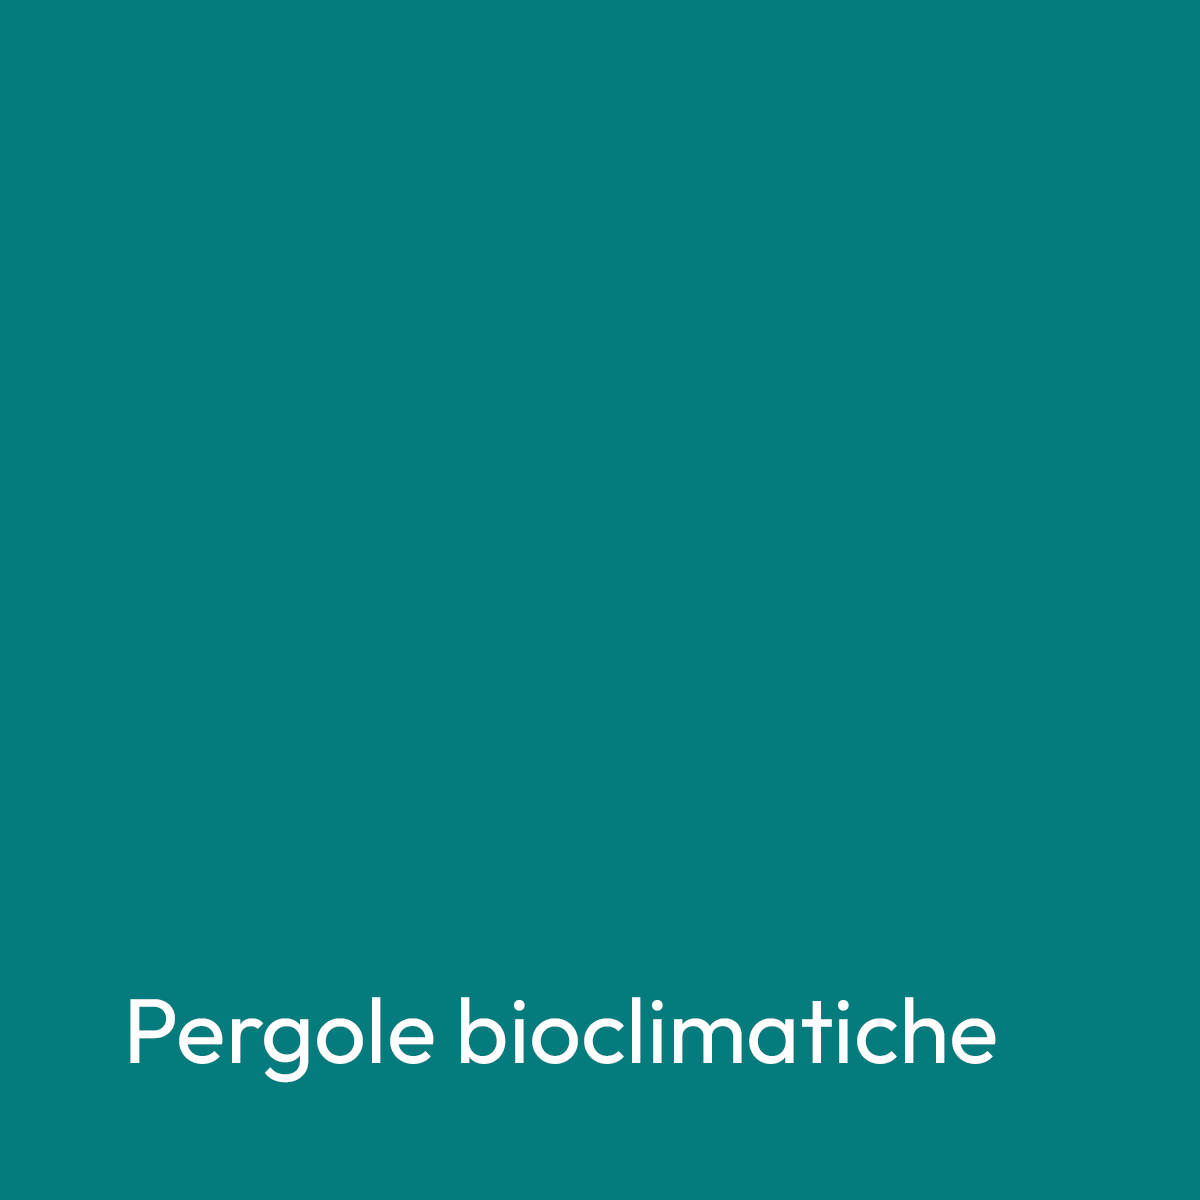 banner-title-pergolebioclimatiche